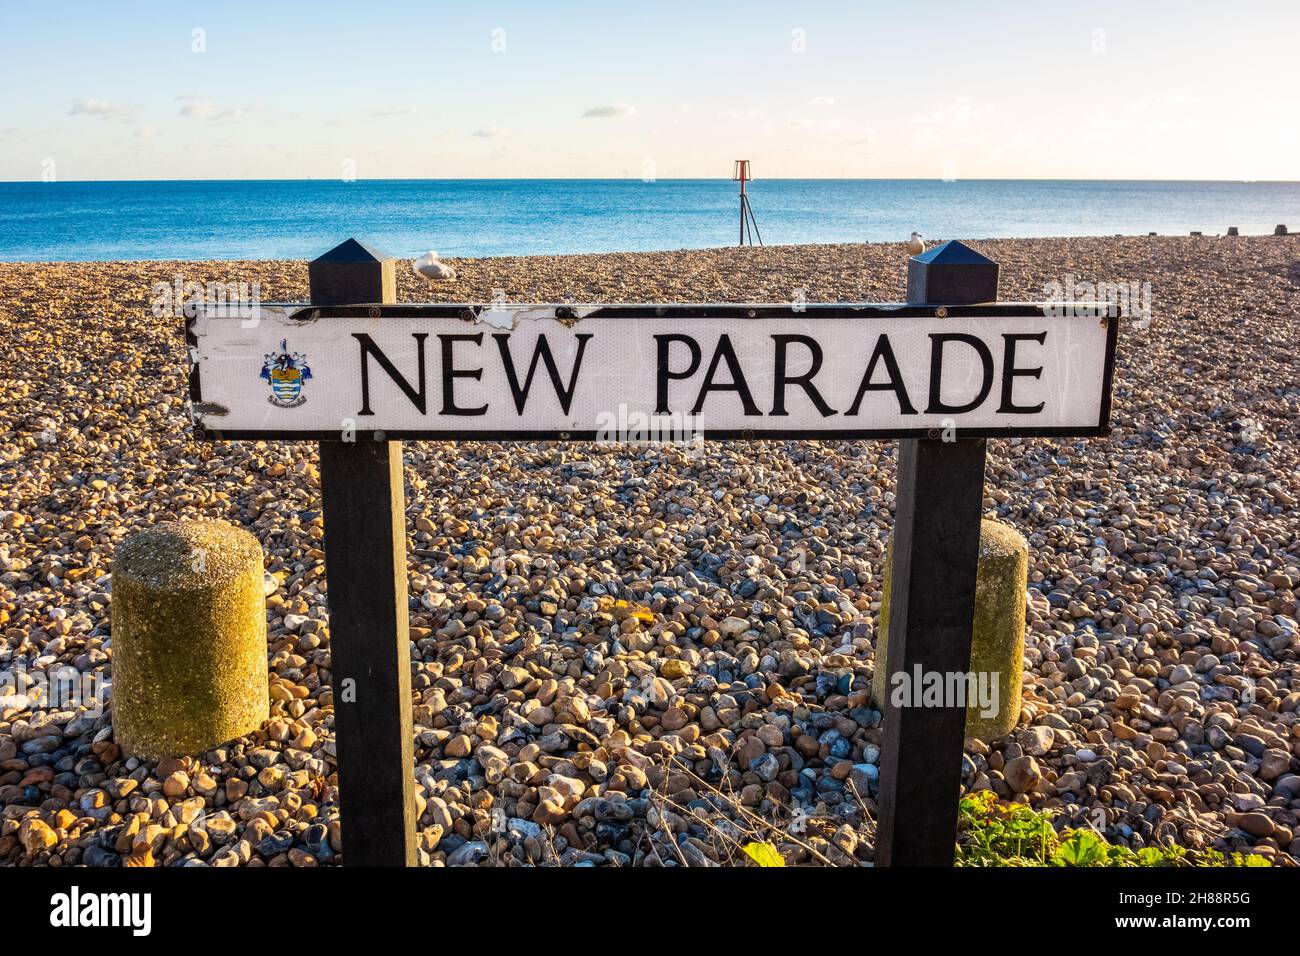 Gros plan du panneau de la route New Parade avec une plage de galets et le bord de mer en arrière-plan, pris à Worthing West Sussex le 25th novembre 2021 Banque D'Images